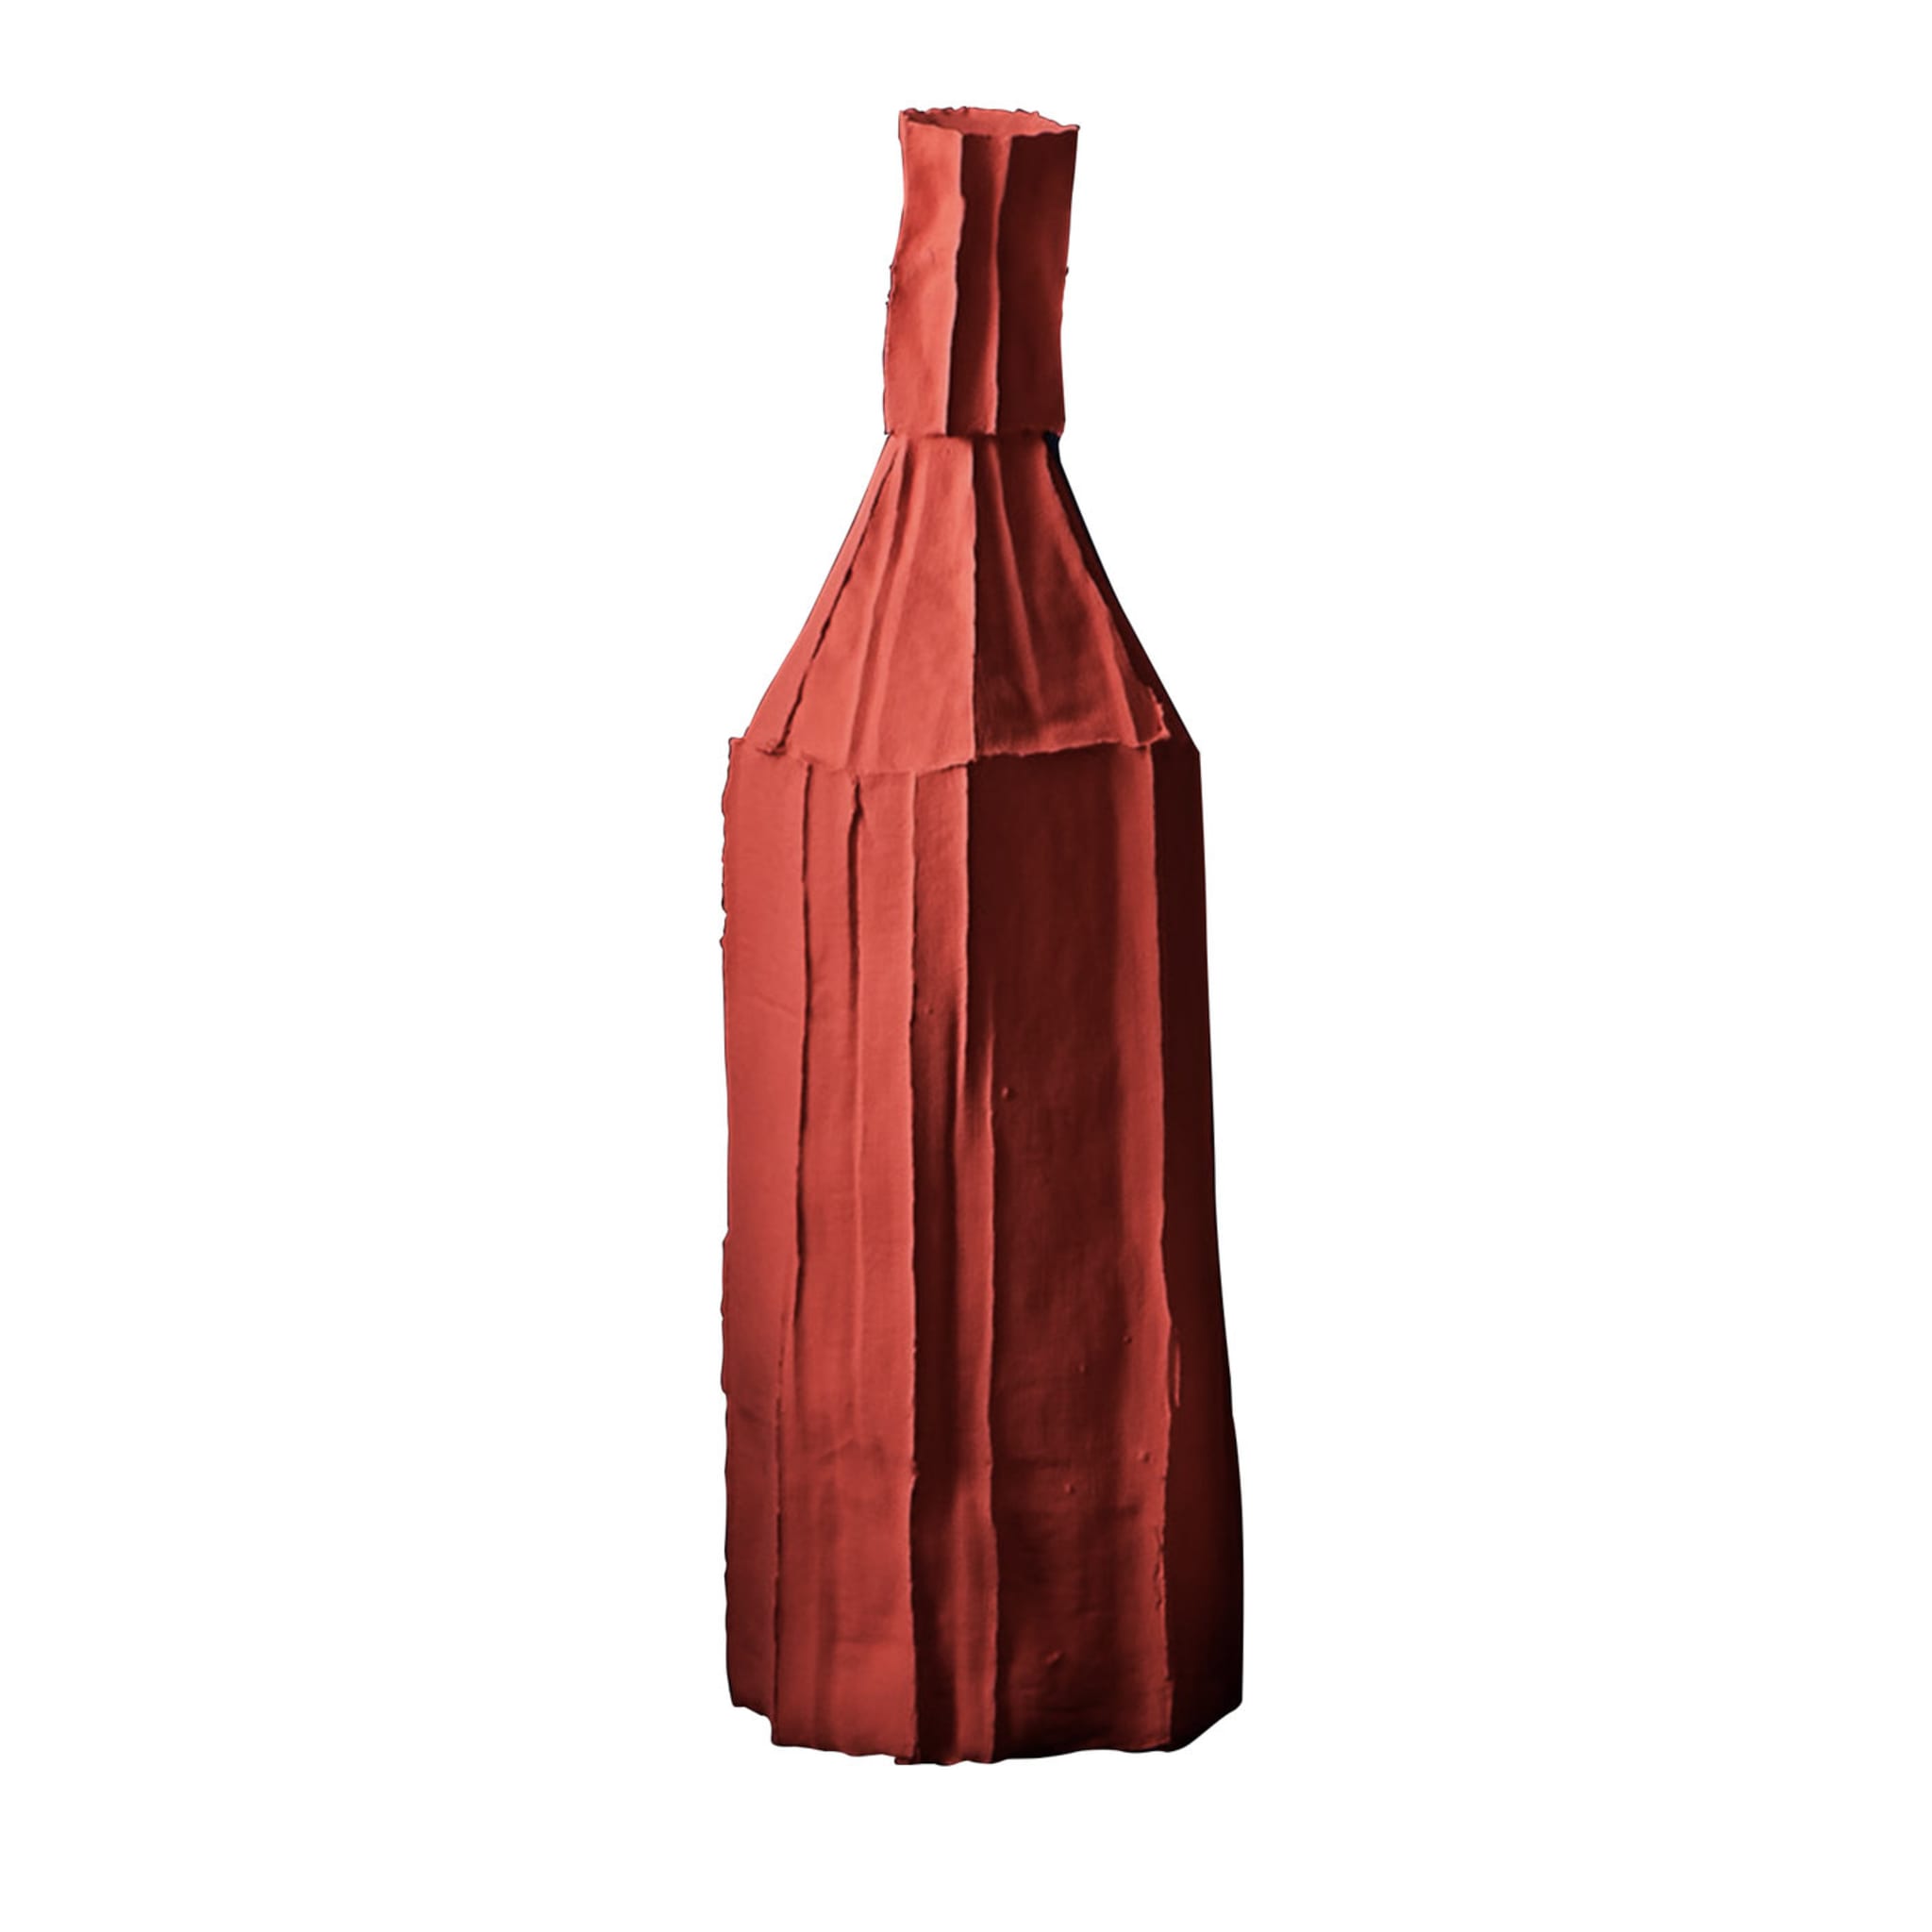 Cartocci Corteccia Red Decorative Bottle - Main view